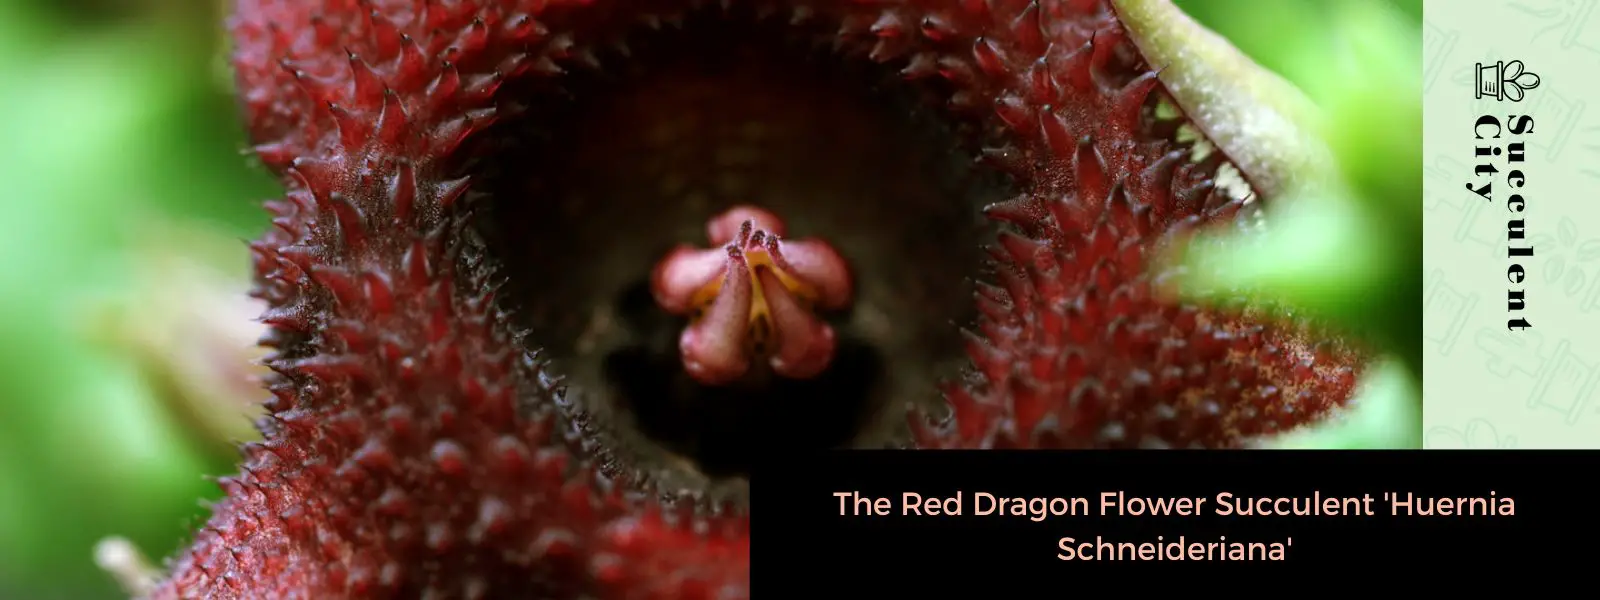 La suculenta flor de dragón rojo “Huernia Schneideriana”